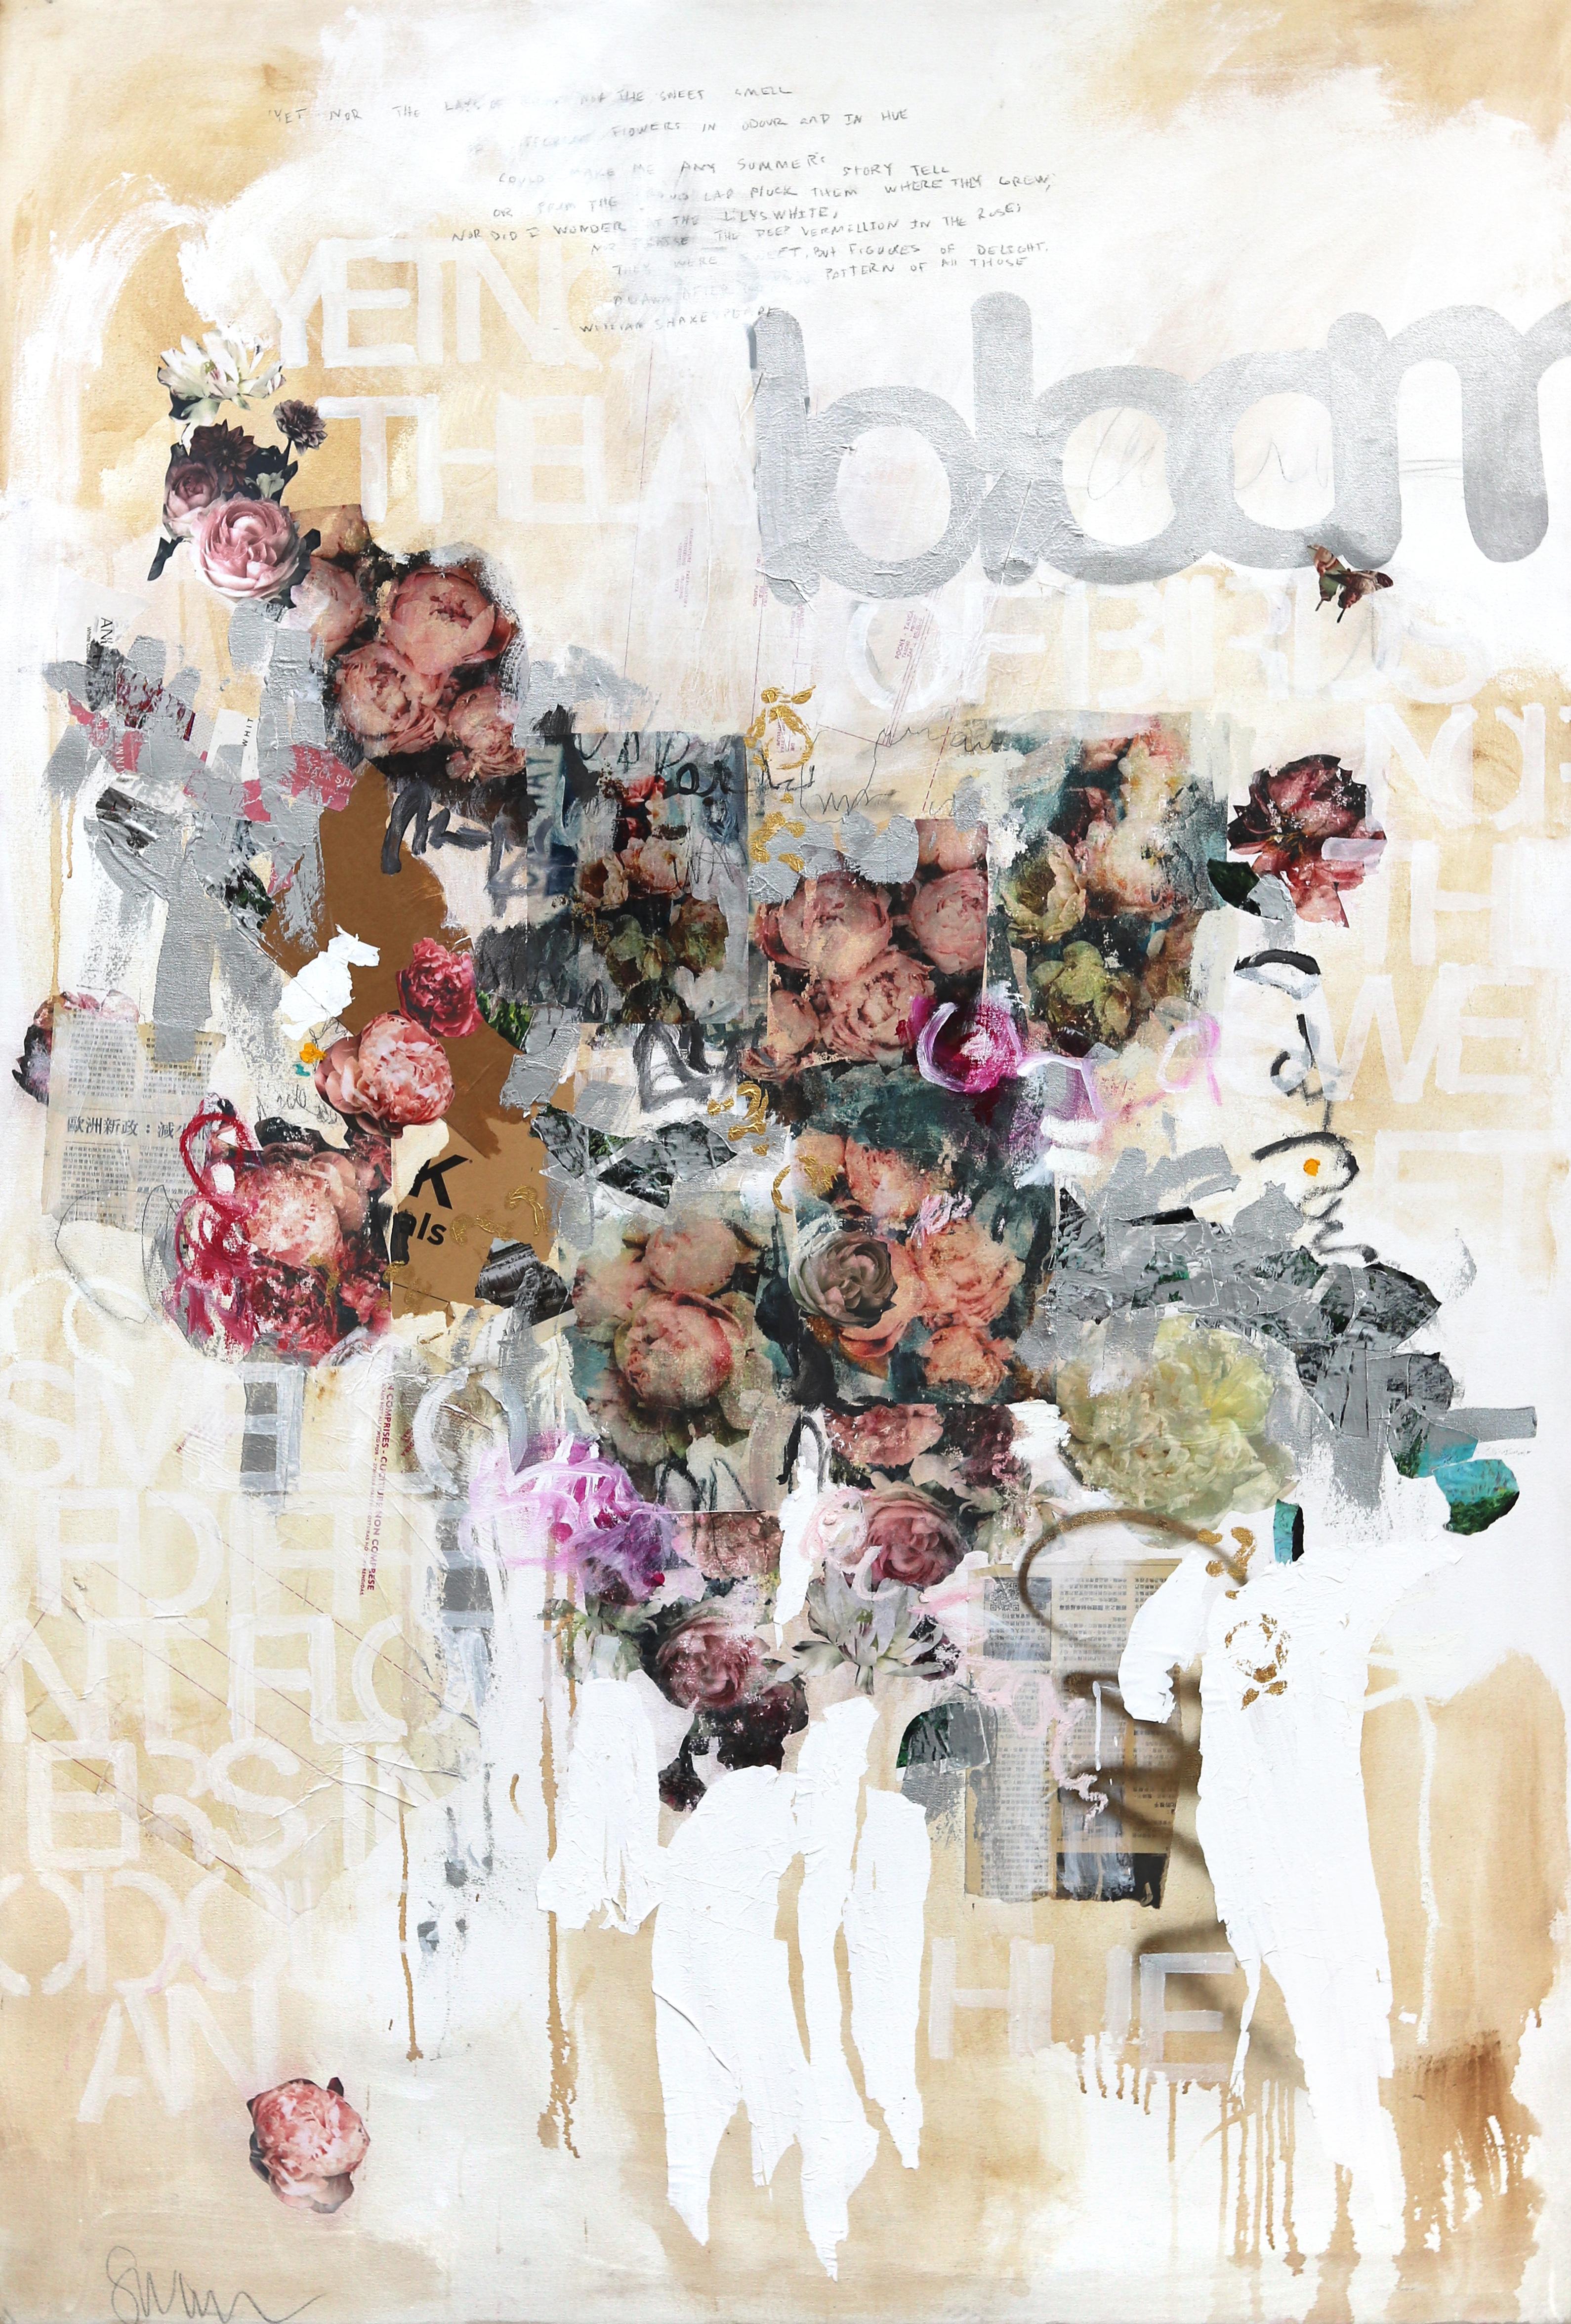 SS106 Bloom - Grande peinture d'expressionnisme abstrait neutre et douce, technique mixte